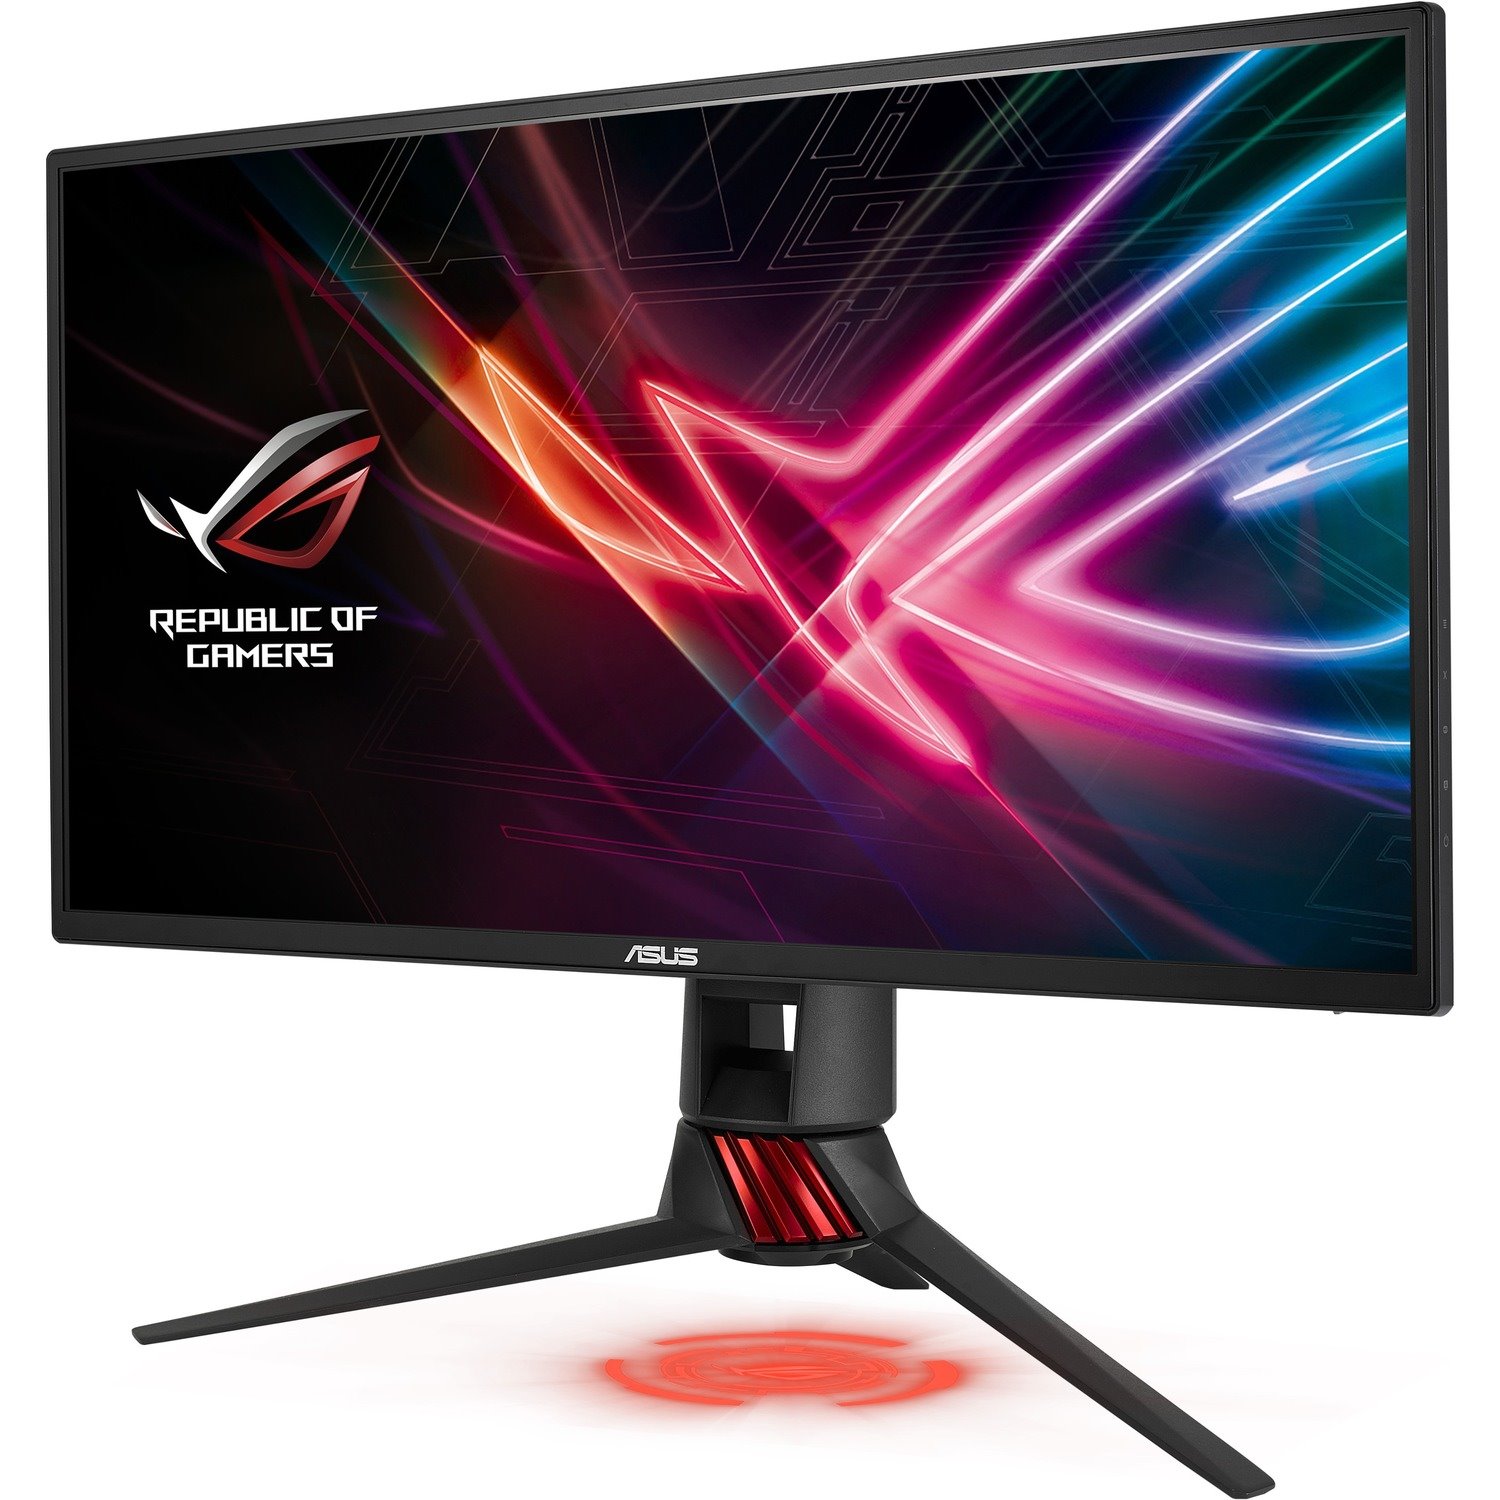 Asus ROG Strix XG258Q Full HD Gaming LCD Monitor - 16:9 - Red, Dark Gray